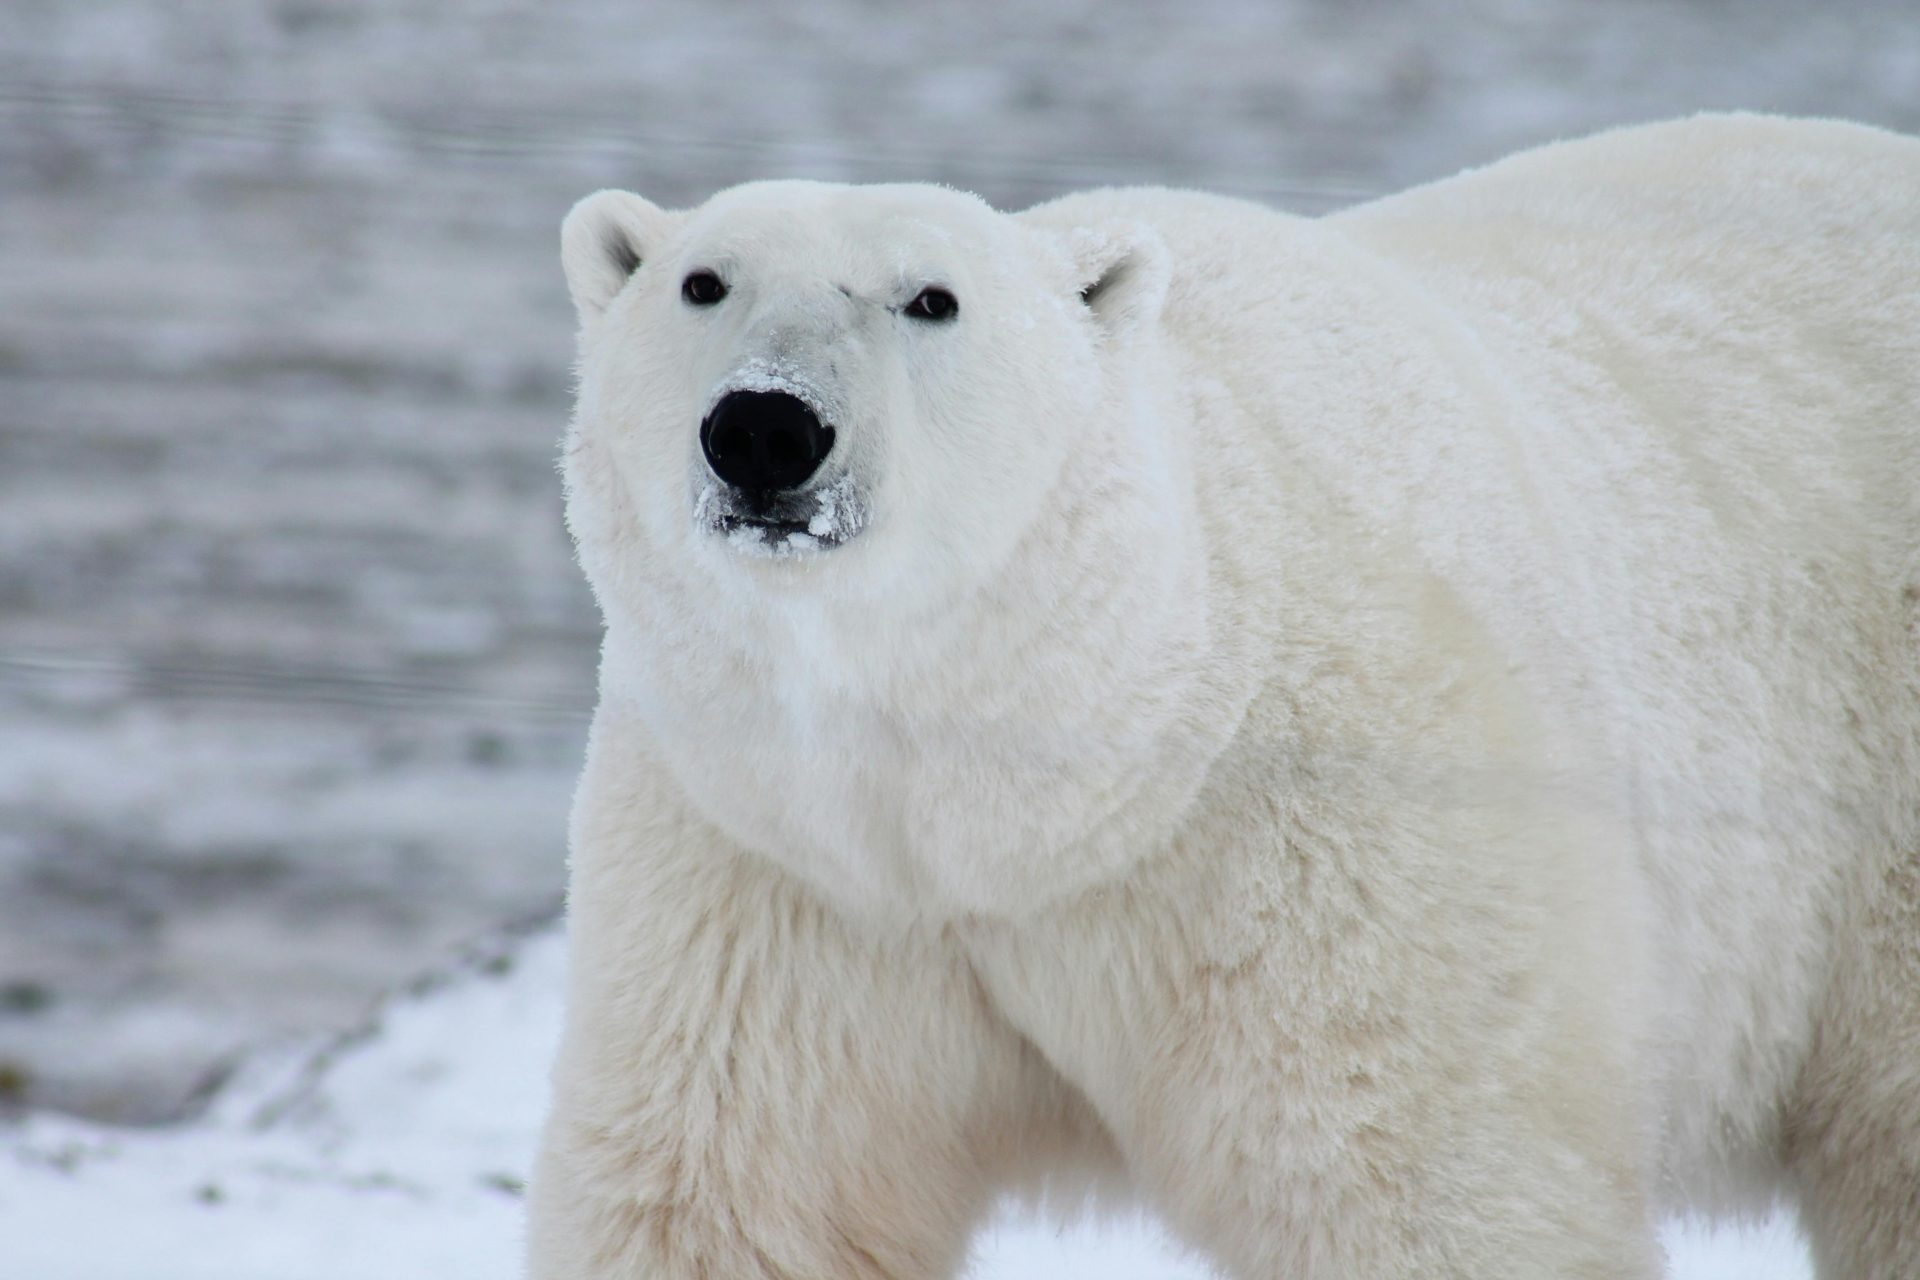 В зоопарке Алматы умер белый медведь, перевезенный из Праги. В Чехии требуют расследования